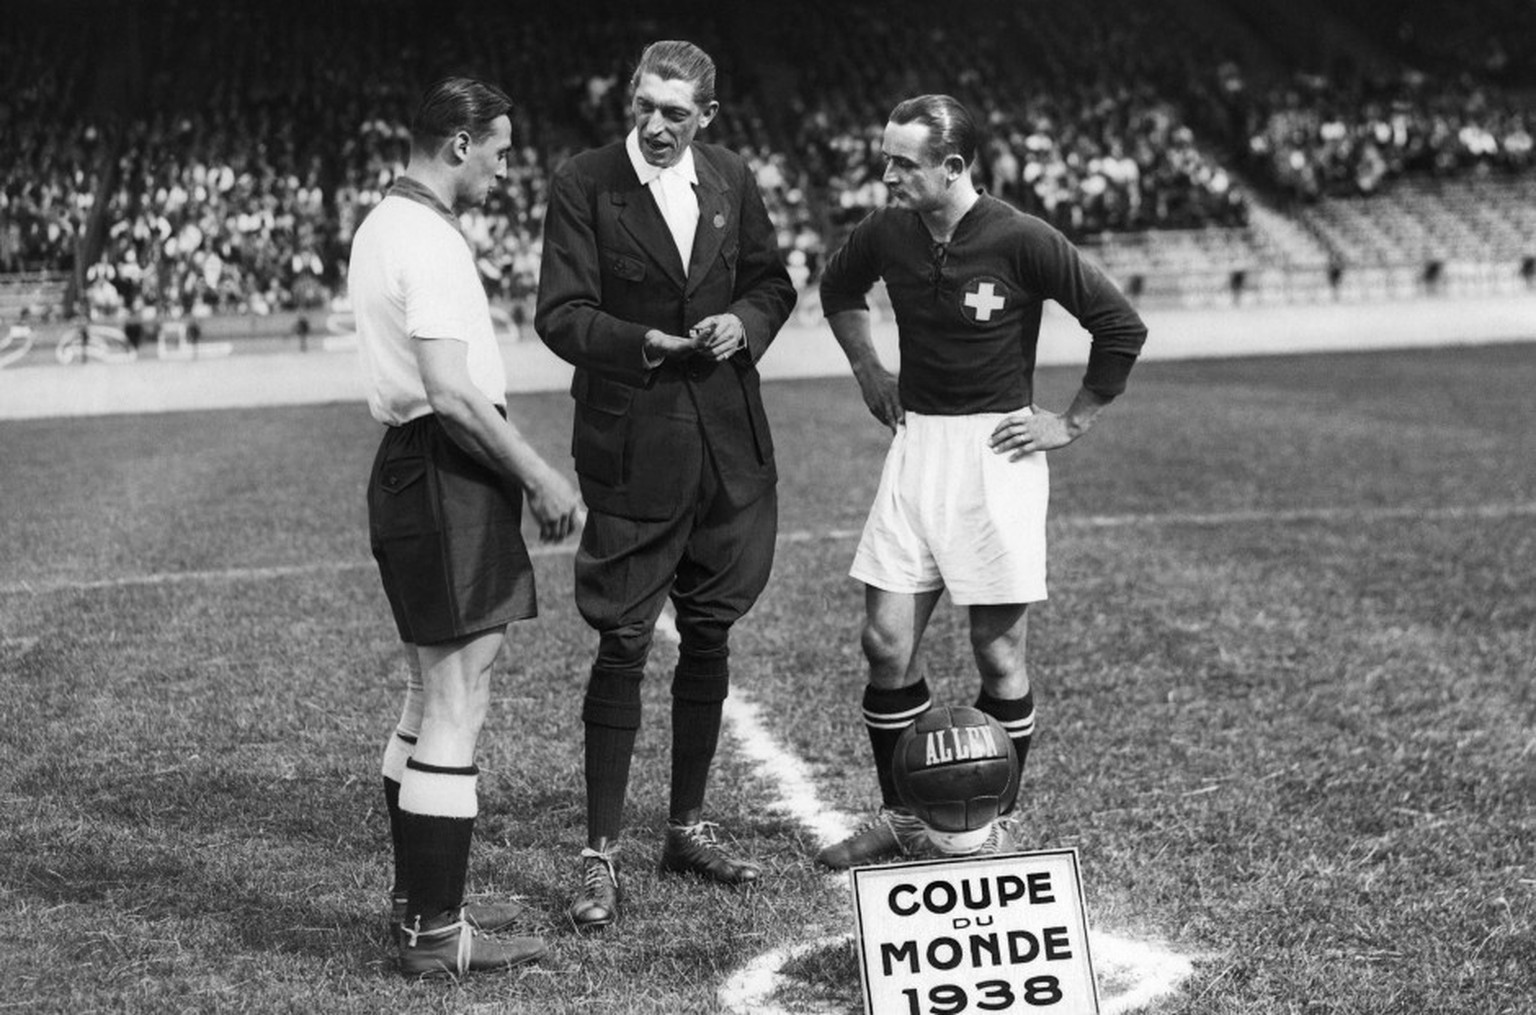 Severino Minelli, Nati-Star und Secondo mit italienischen Wurzeln, bei der Fussball-WM 1938 in Frankreich.